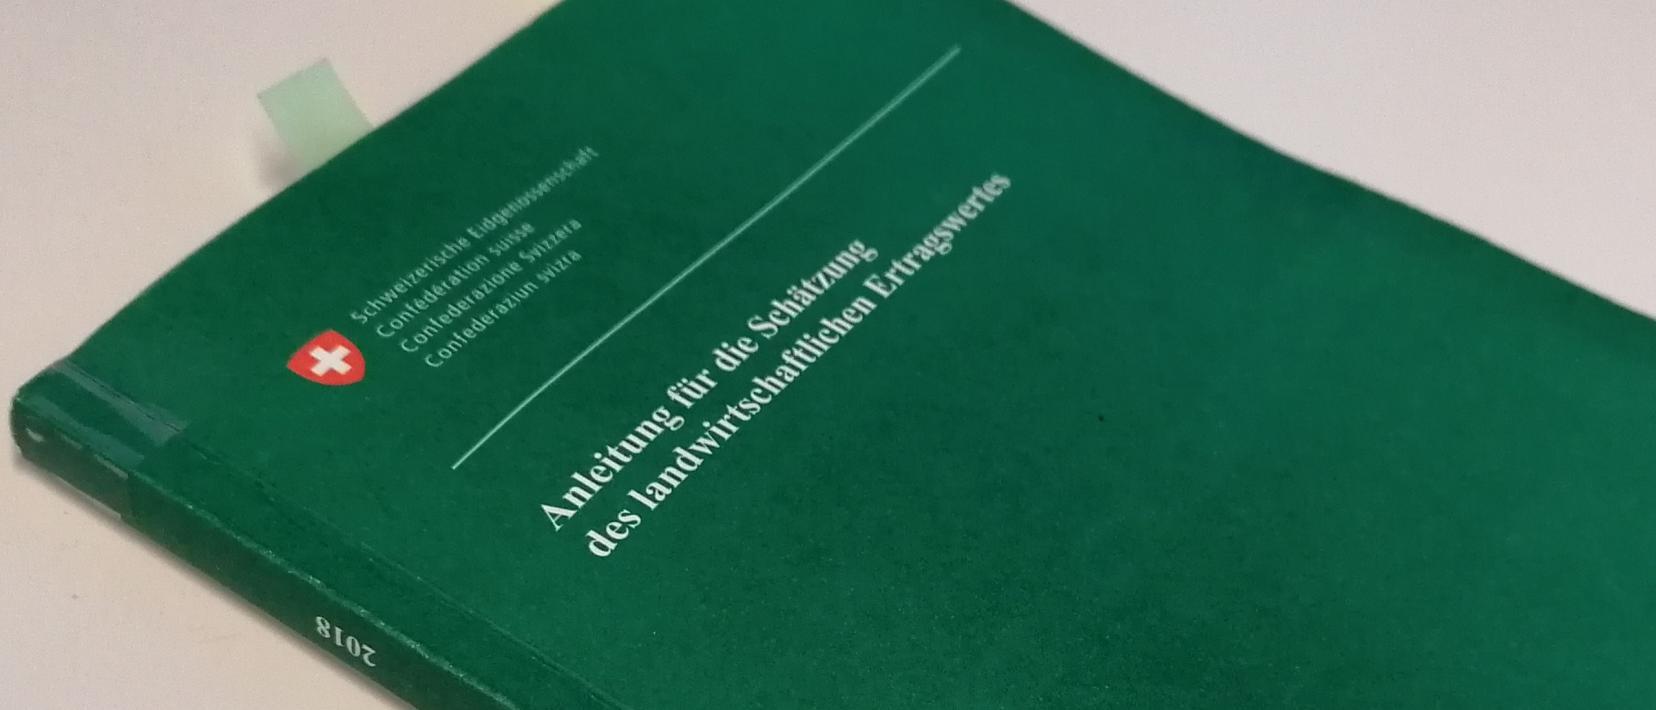 Buch mit dem Titel «Anleitung für die Schätzung des landwirtschaftlichen Ertragswertes»